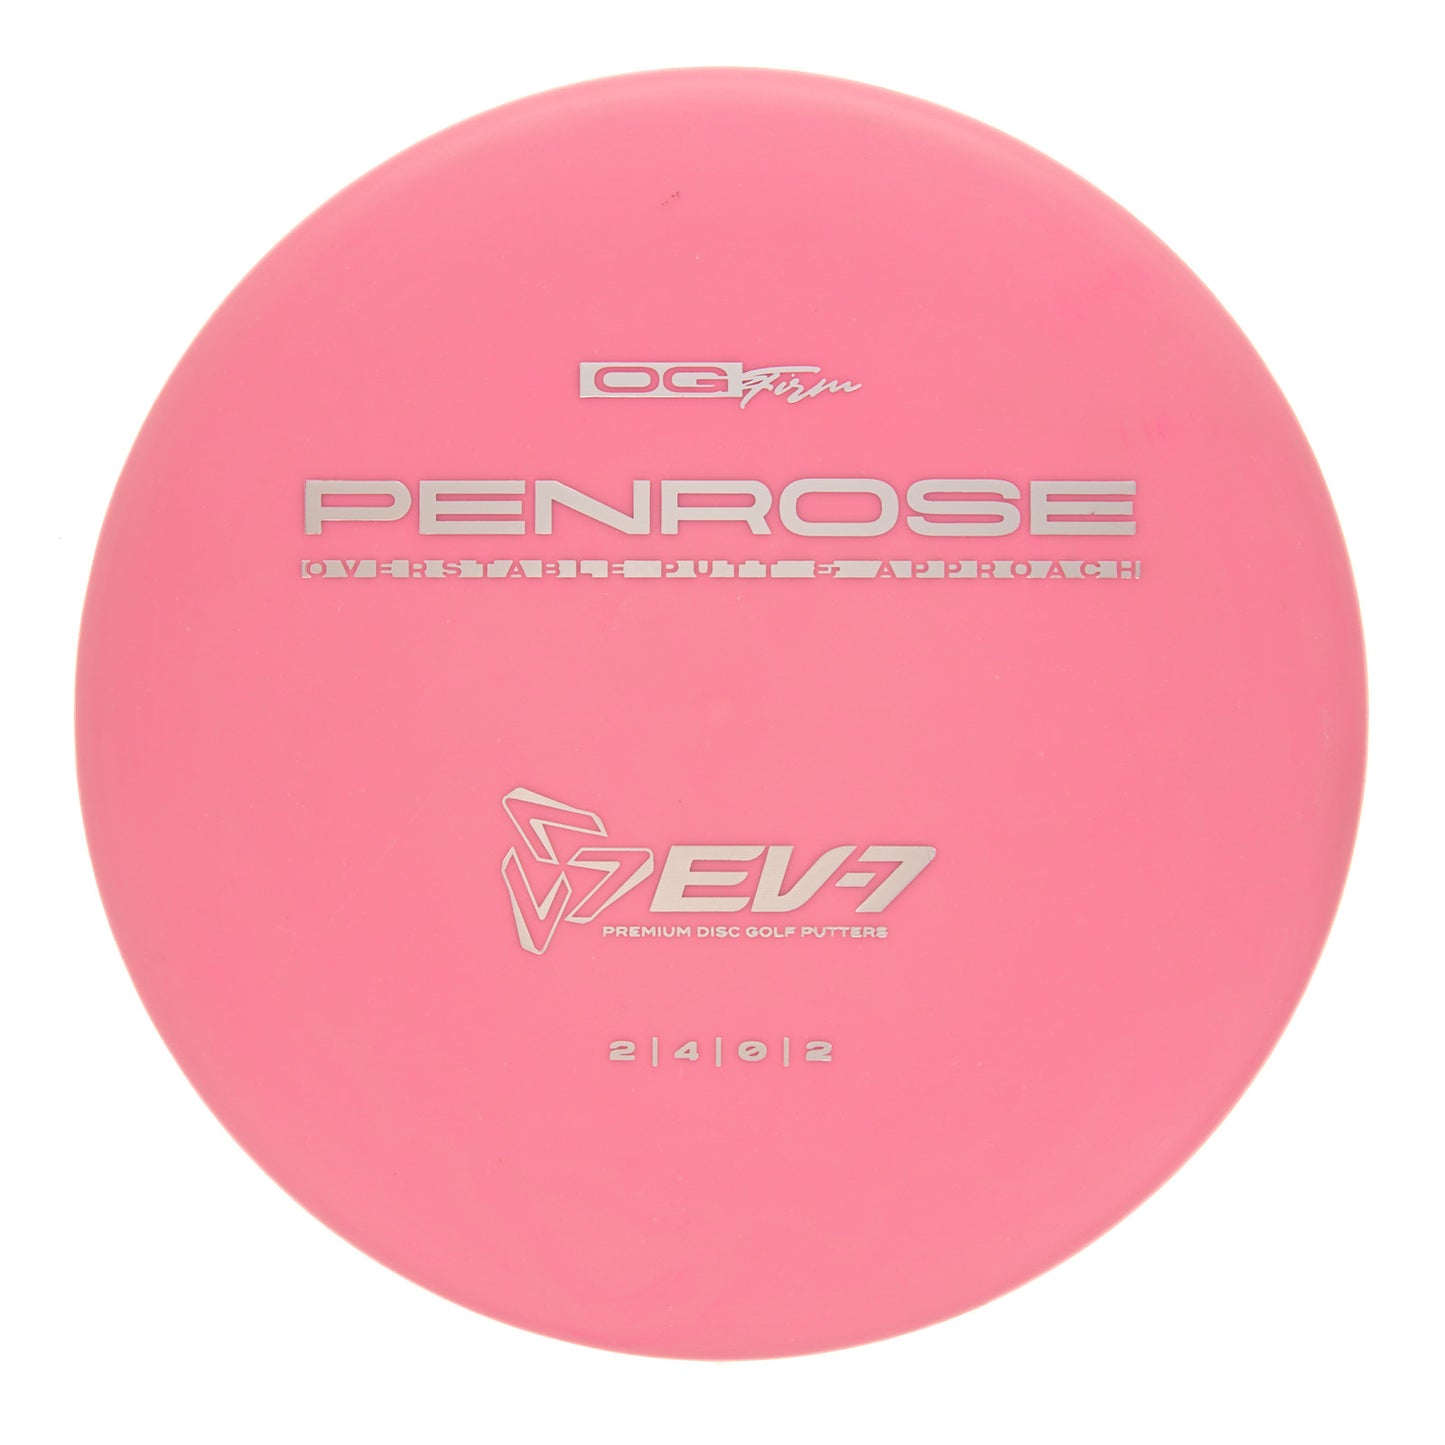 EV-7 Penrose - OG Firm 173g | Style 0005